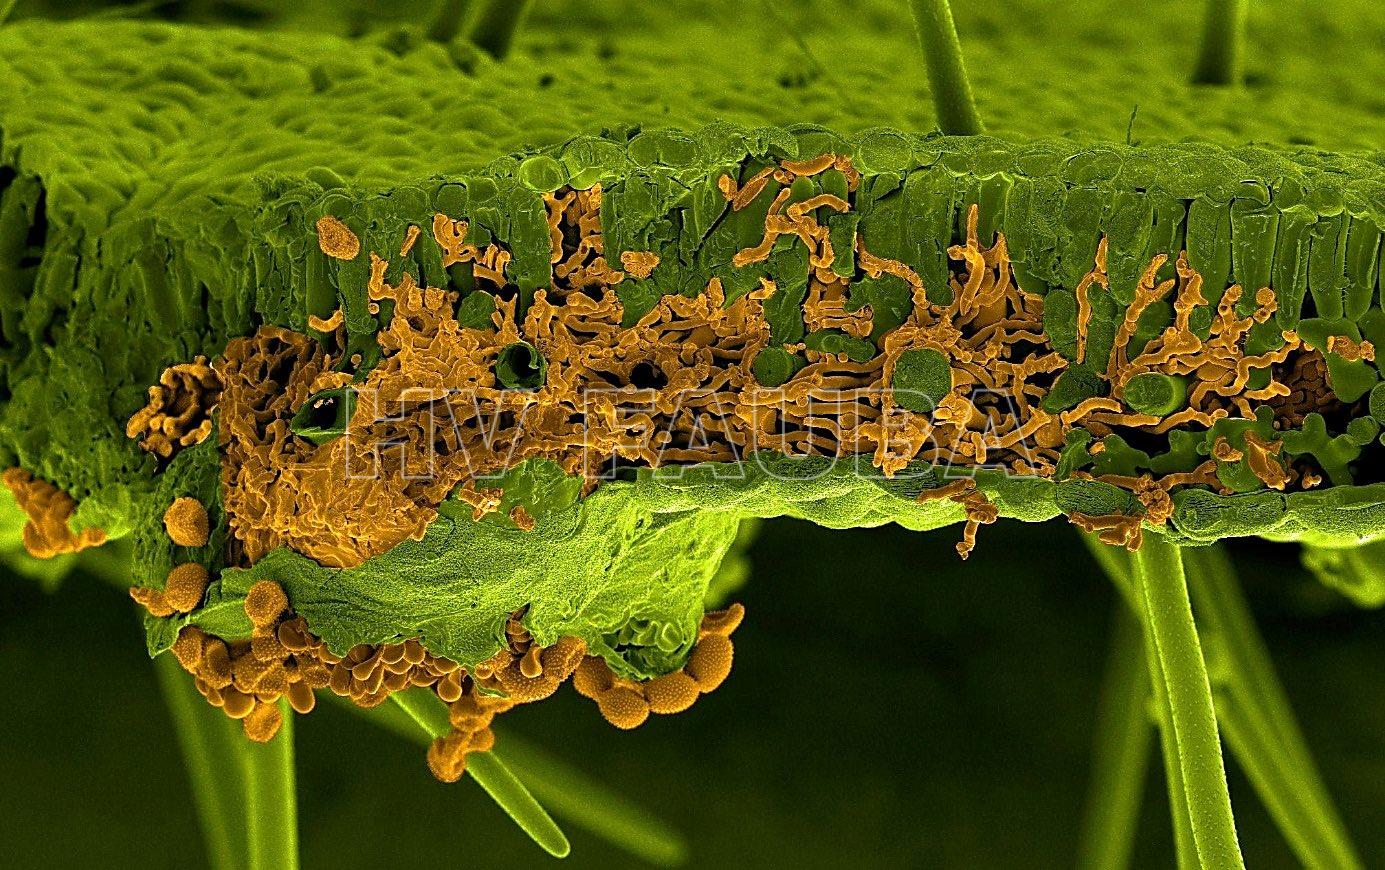 Imagen de microscopía electrónica de barrido (SEM) de una hoja de soja infectada por Phakopsora pachyrhizi. La hoja y el hongo fueron pintados artificialmente de verde y naranja, respectivamente. La sección muestra hifas de infección invasora del hongo dentro del mesófilo de la hoja, mientras que las esporas son visibles debajo de la hoja que atraviesa la epidermis inferior (Autor: U. Steffens, Bayer Crop Science)